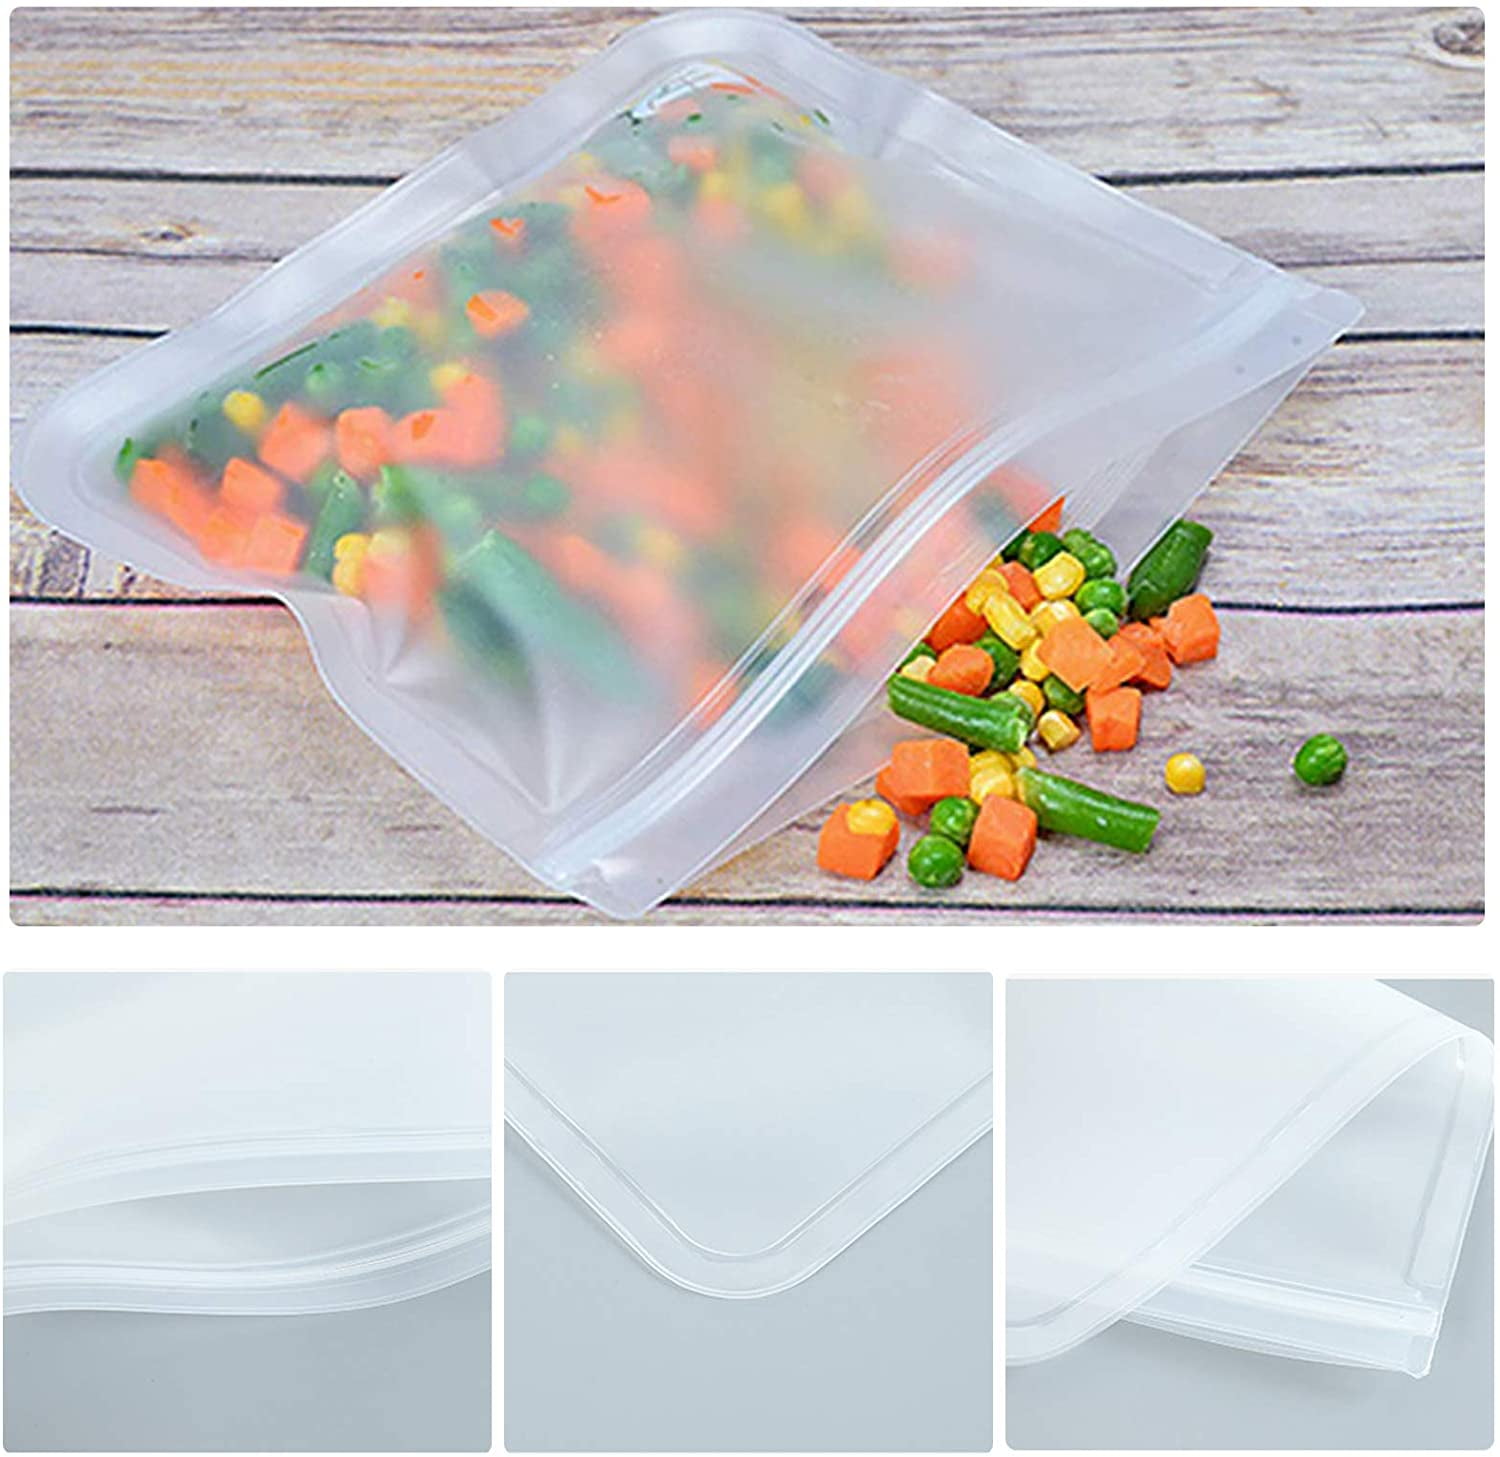 [1 Pack] Disposable Plastic Resealable Sandwich Bags - Food Storage Kosher  Grip N Zip Bags - Great for Snacks, Food Prep, Travel, Meal Prep, School